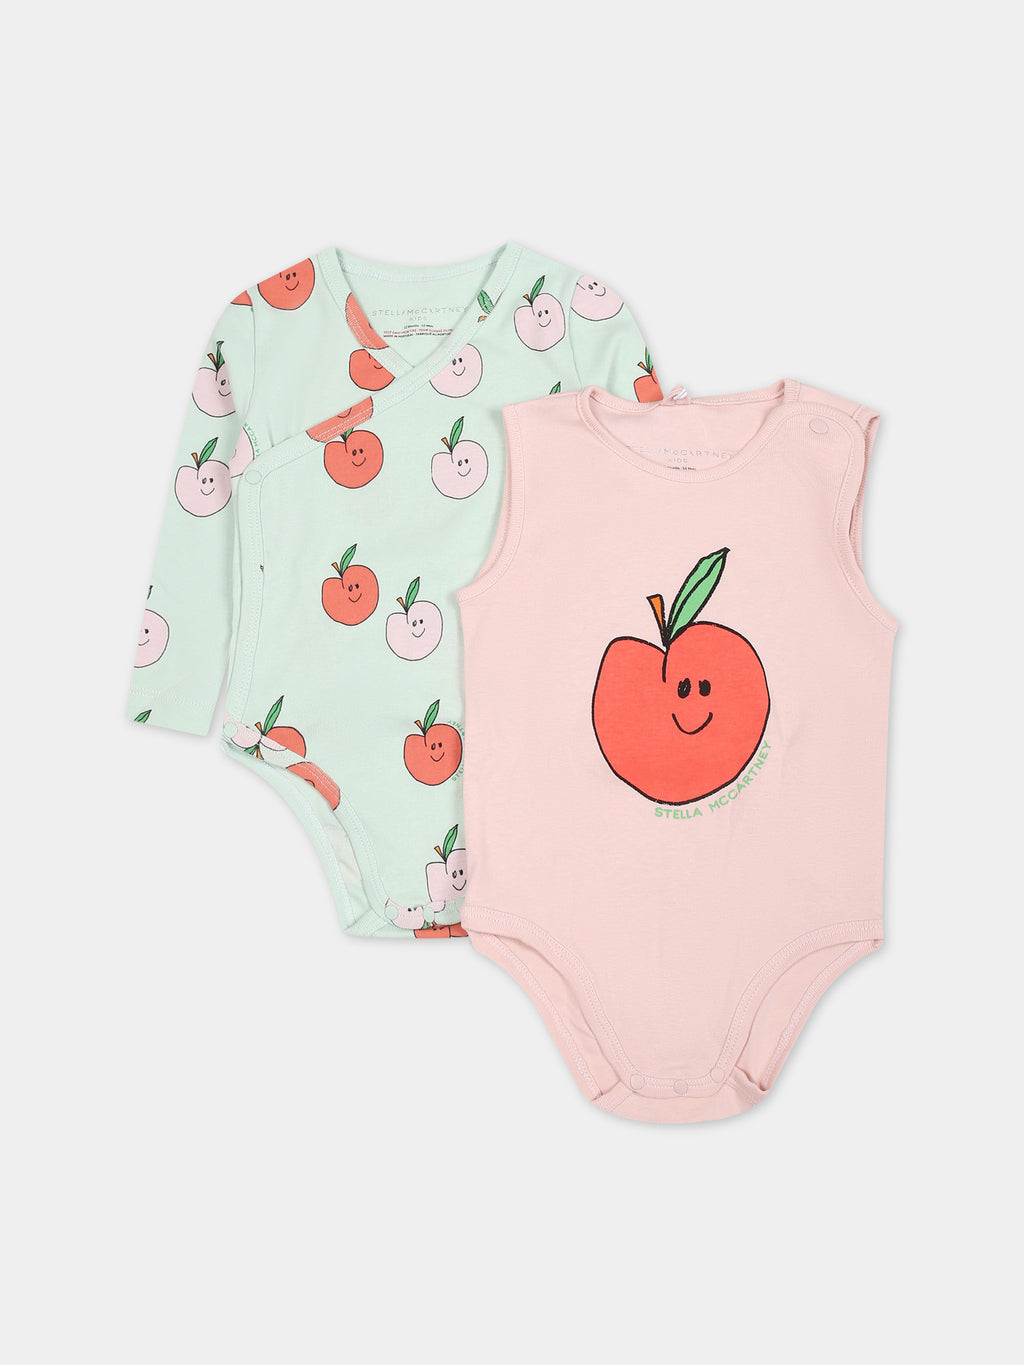 Ensemble multicolor pour bébé fille avec pommes